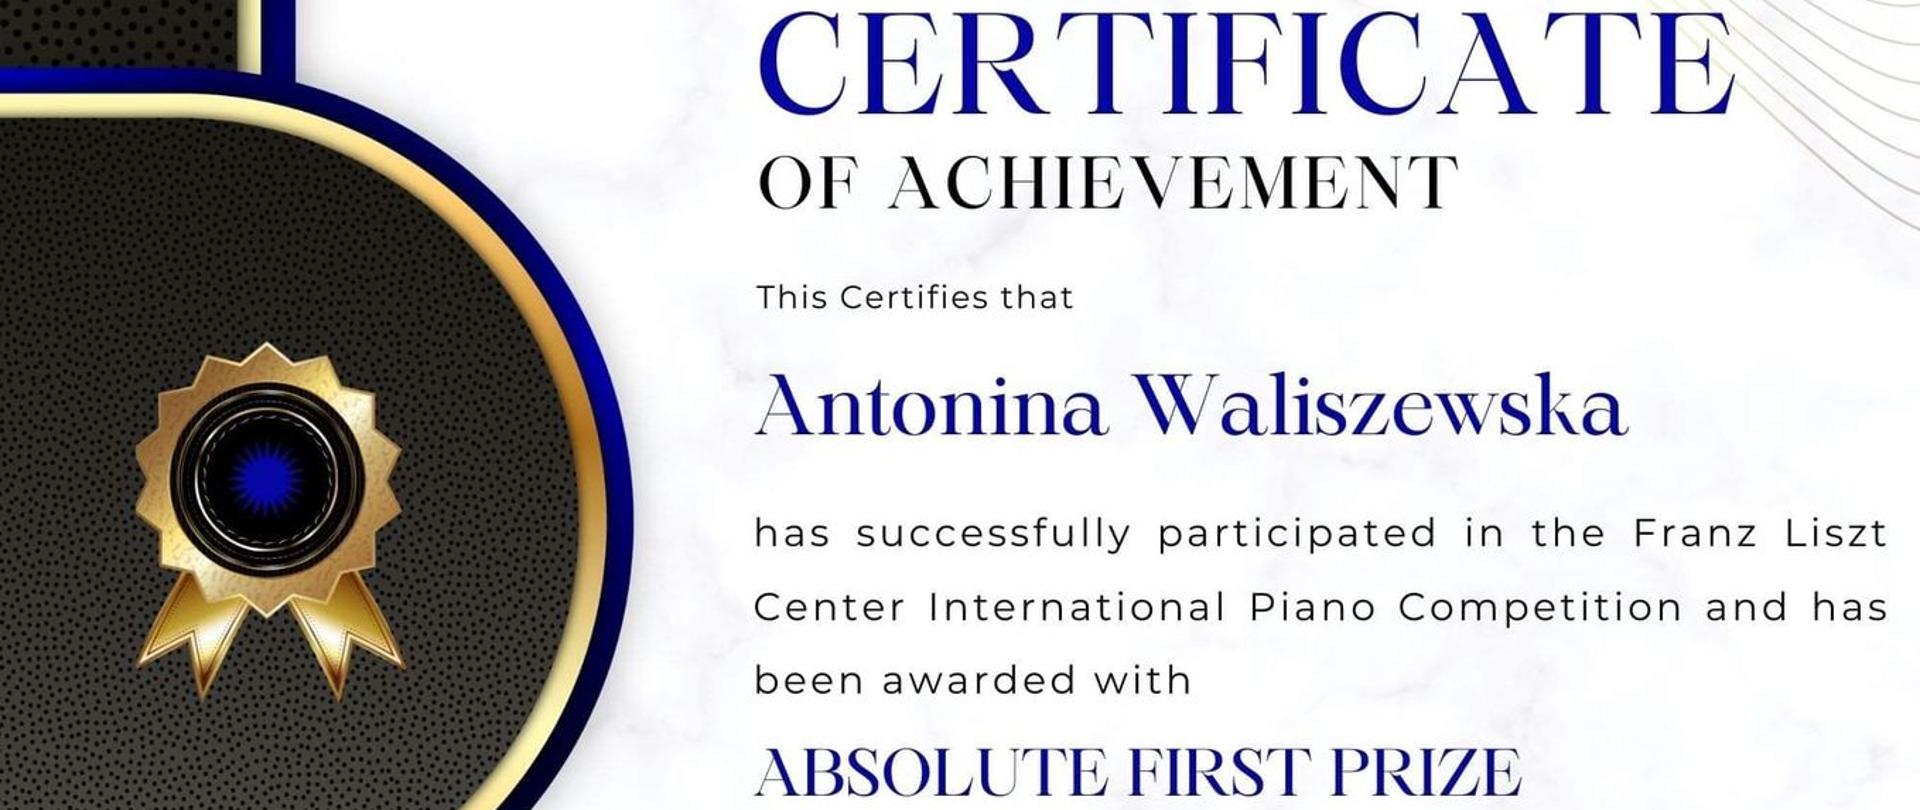 Dyplom w języku angielskim. Certyficate of achievement Absolute First Prize. Antonina Waliszewska z otrzymała ABSOLUTE FIRTST PRIZE w ramach Franz Liszt Center International Piano Competition